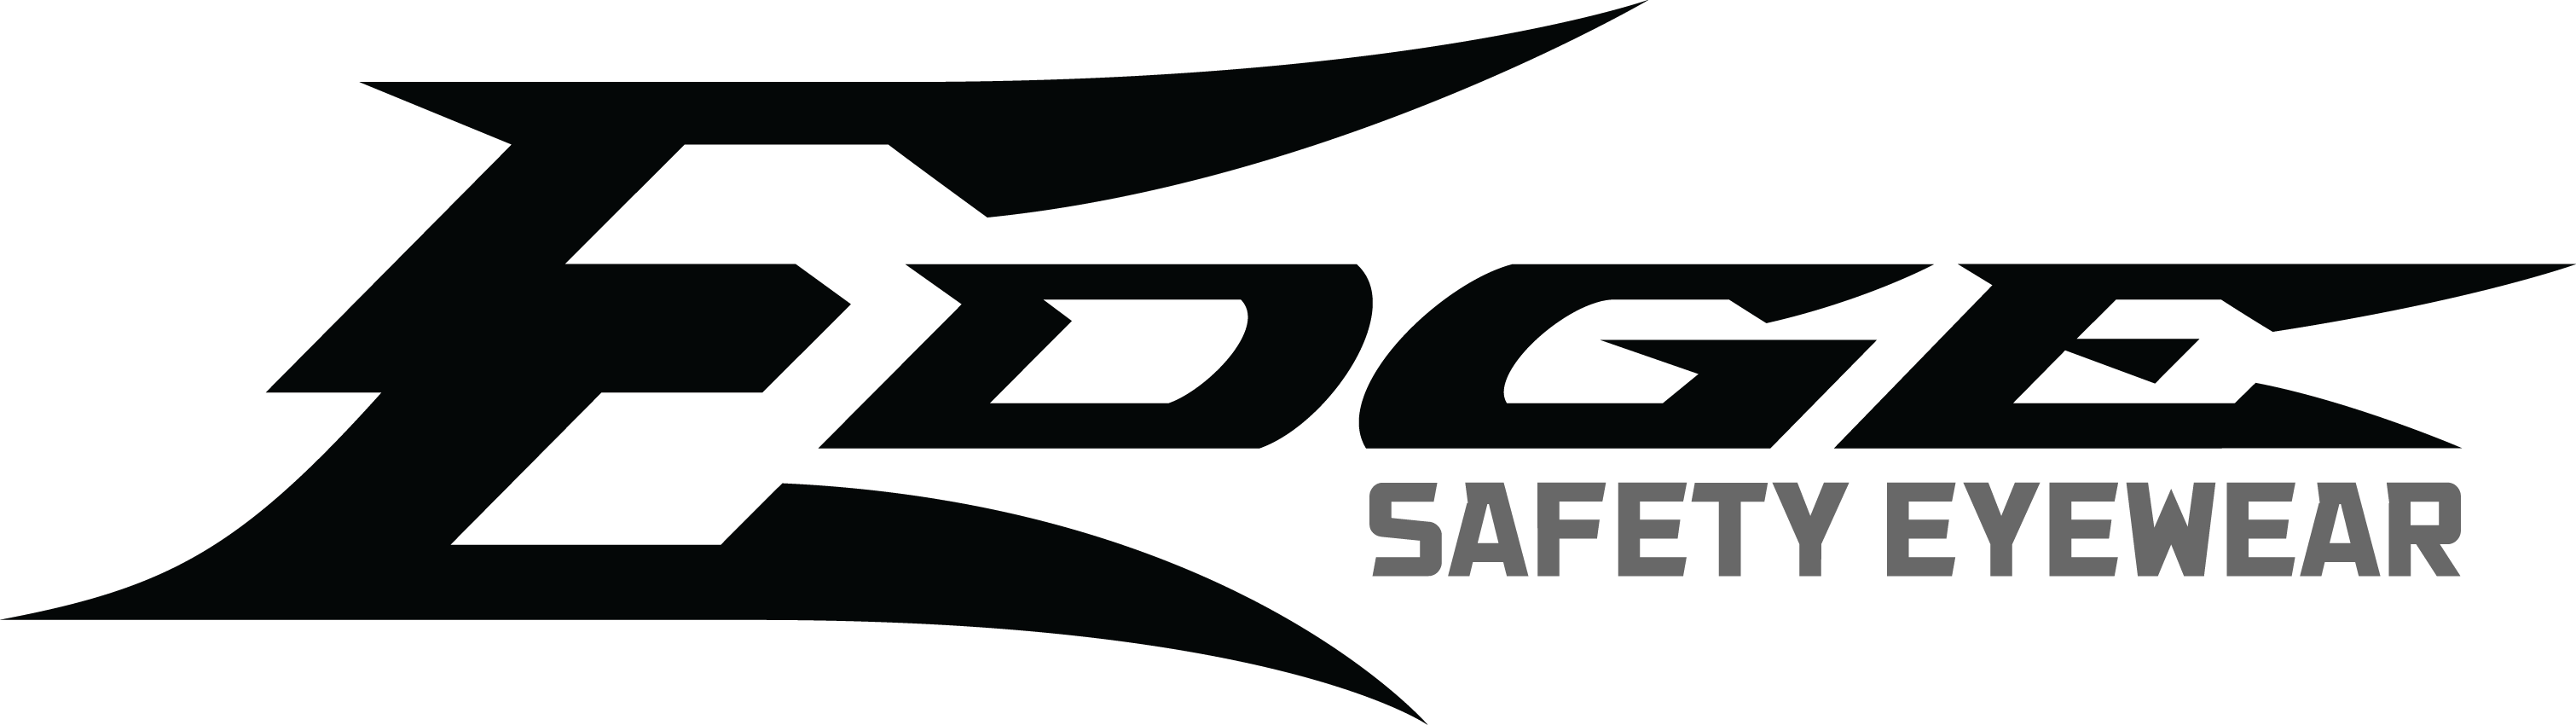 Edge Safety Us Logo Black